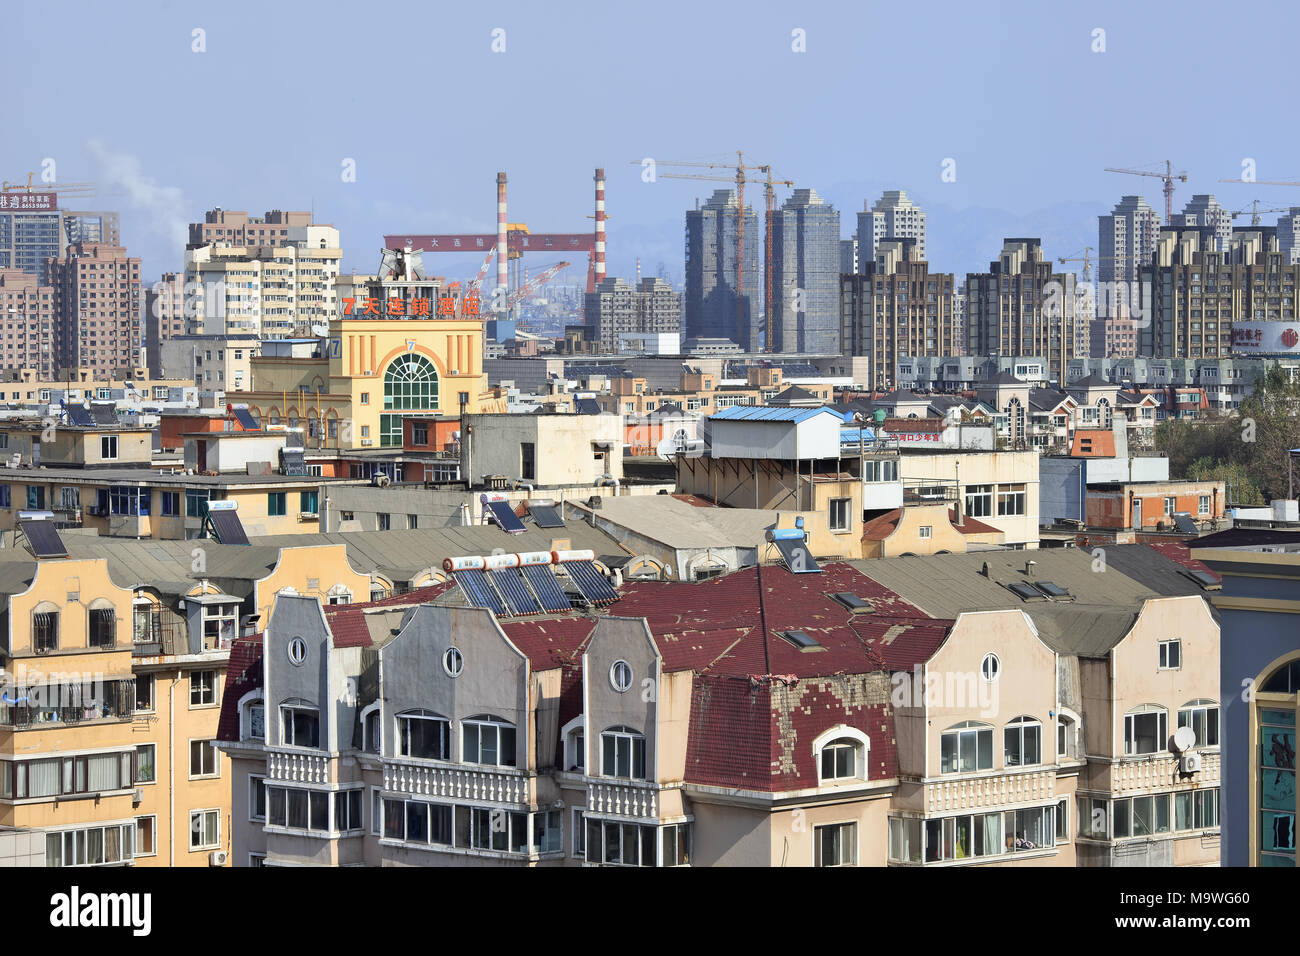 DALIAN-cina-nov. 1, 2014. City scape di Dalian, provincia di Liaoning, che è vista come città modello per la pianificazione urbana in Cina. Foto Stock